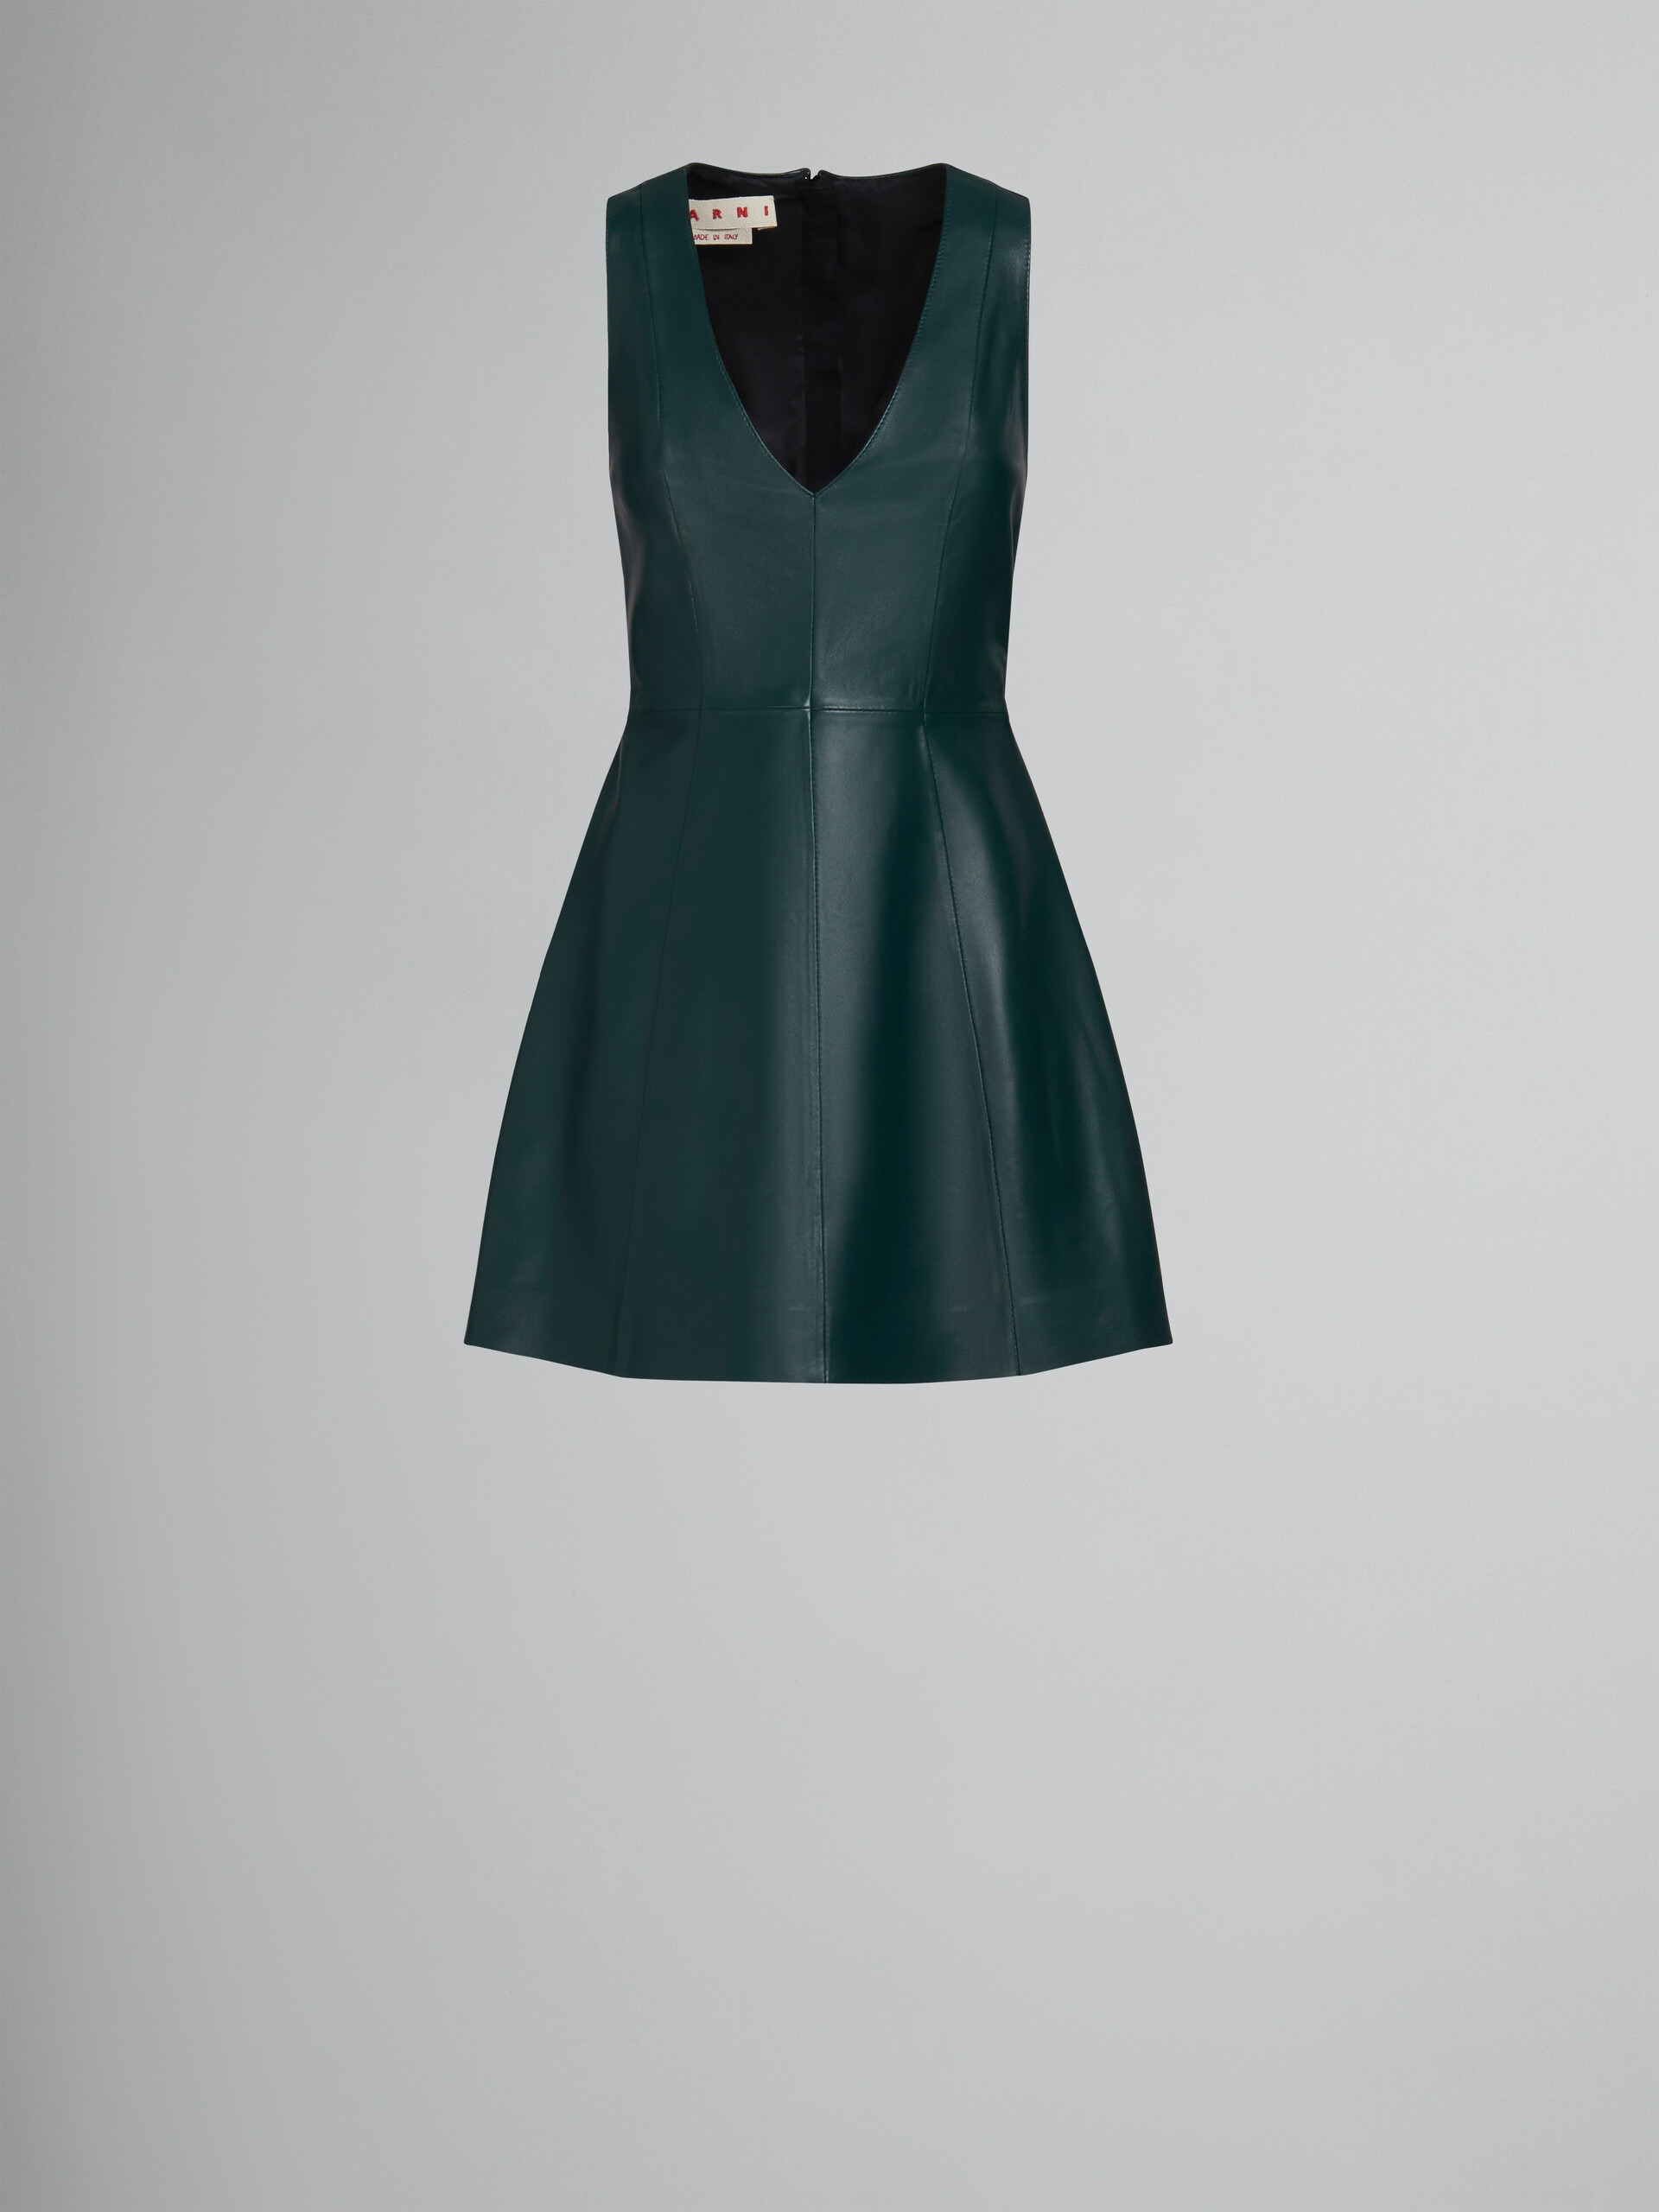 グリーン Vネック レザードレス - ドレス - Image 1